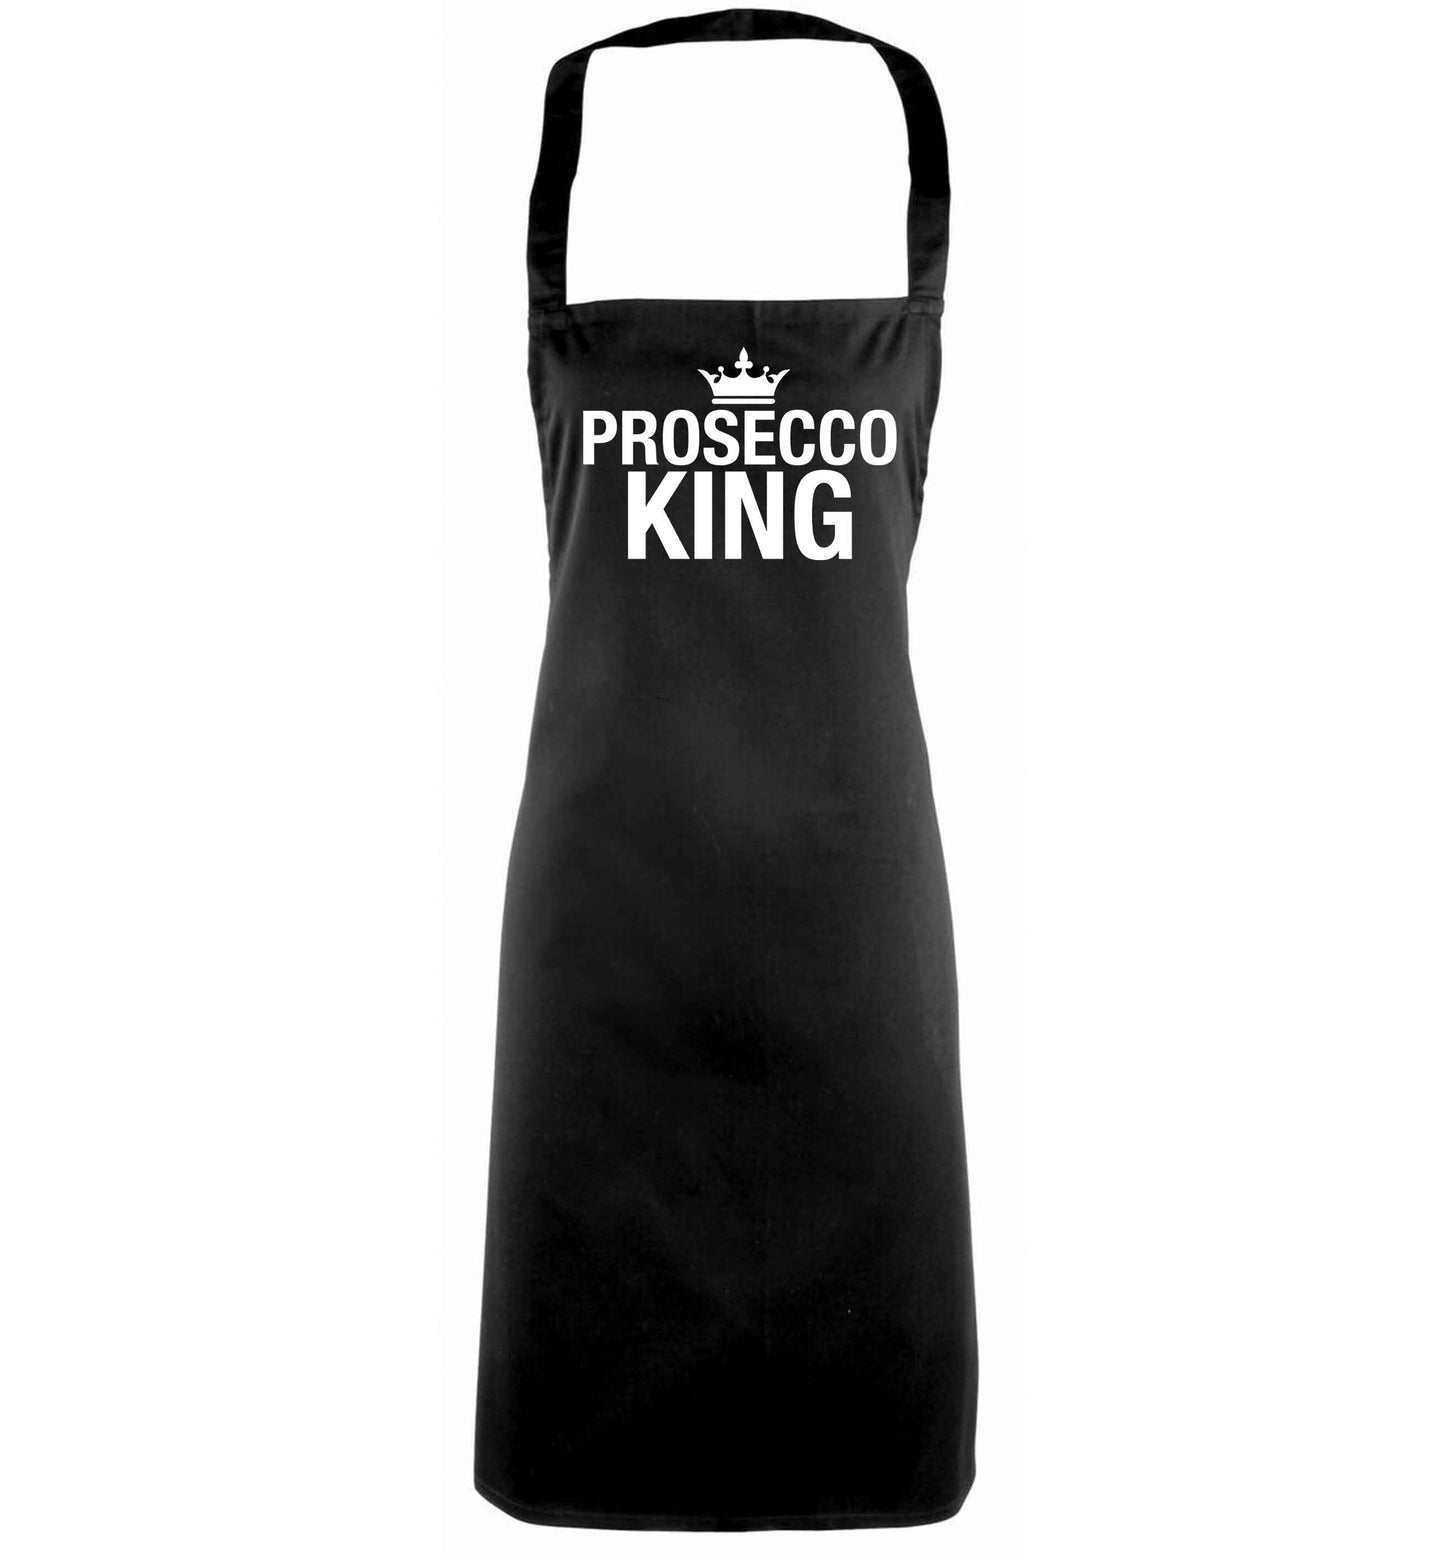 Prosecco king black apron